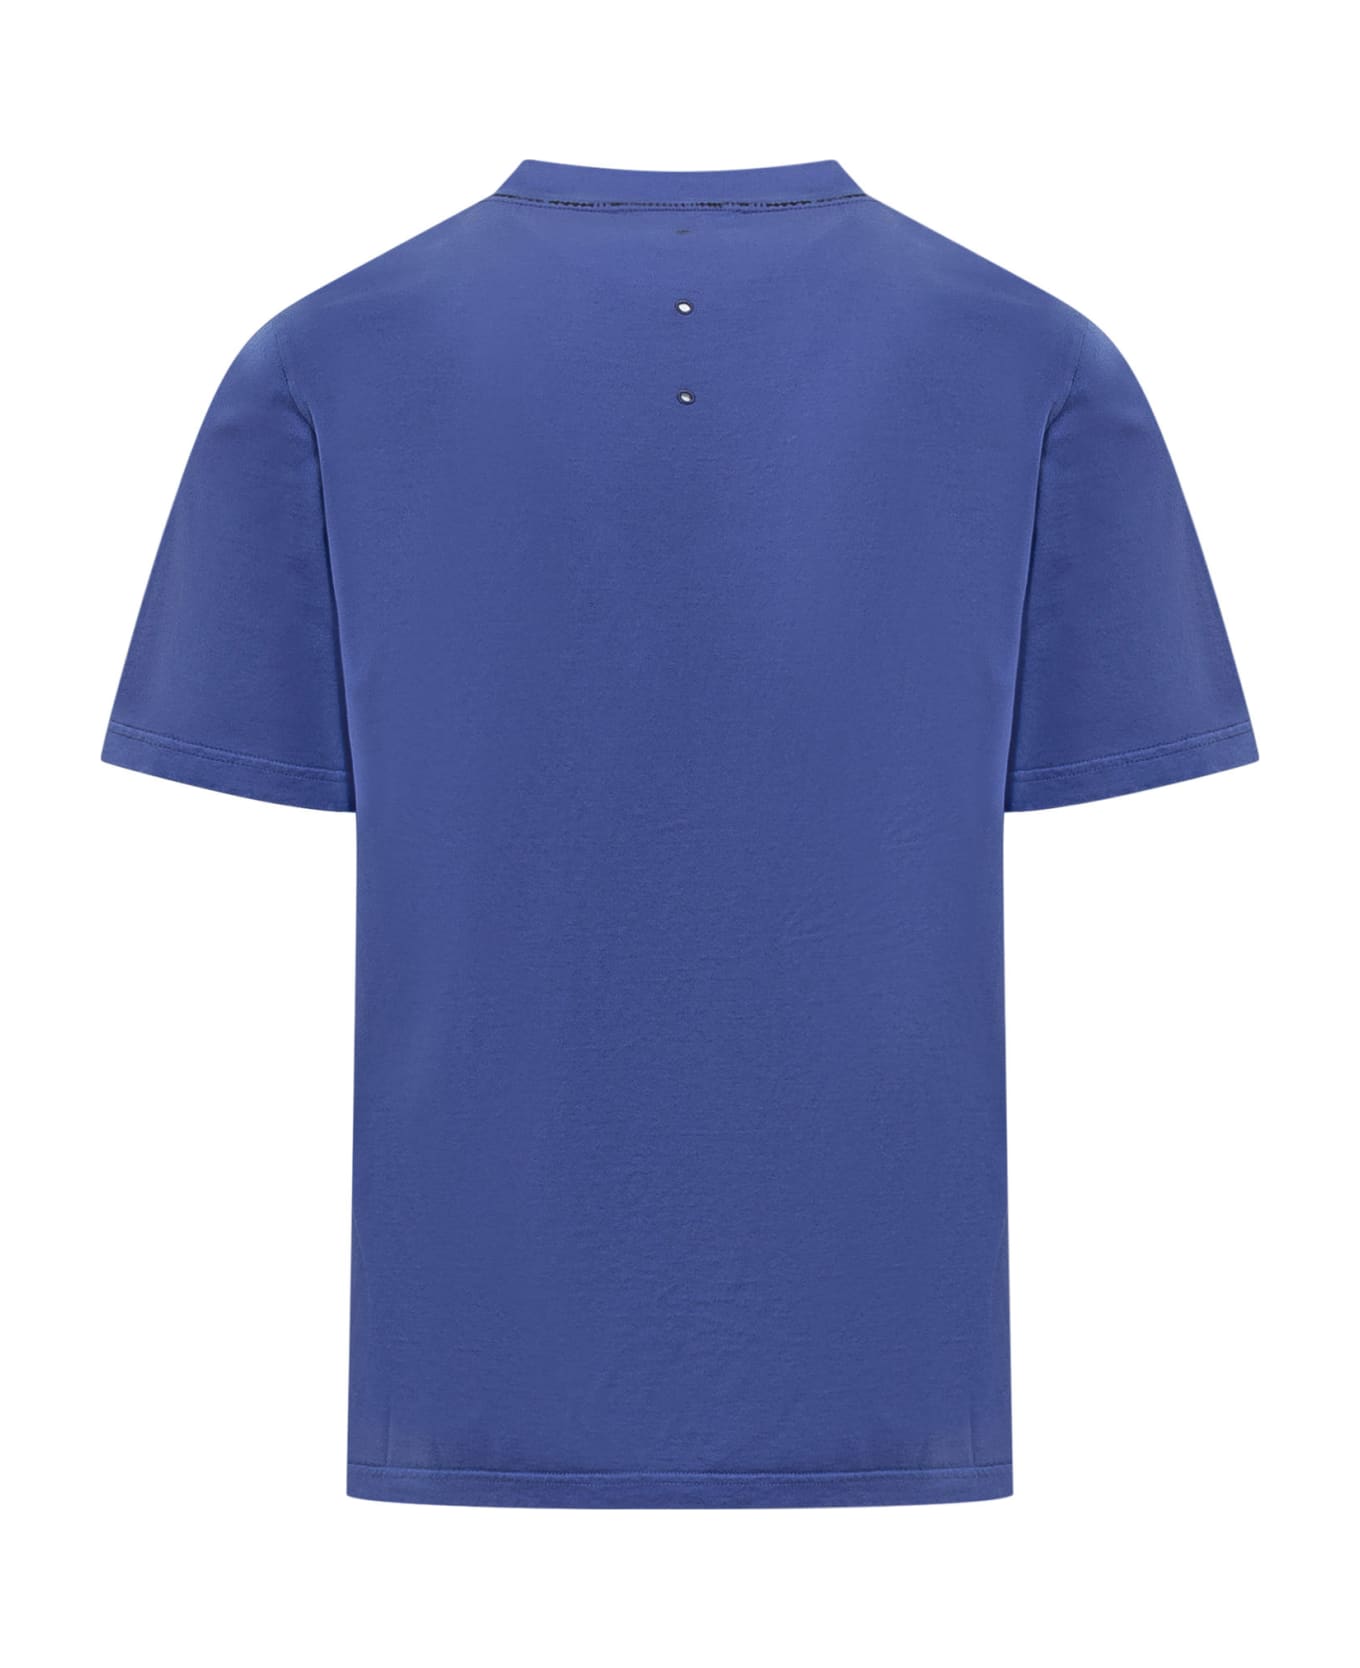 Premiata Neverwhite T-shirt - BLUE シャツ